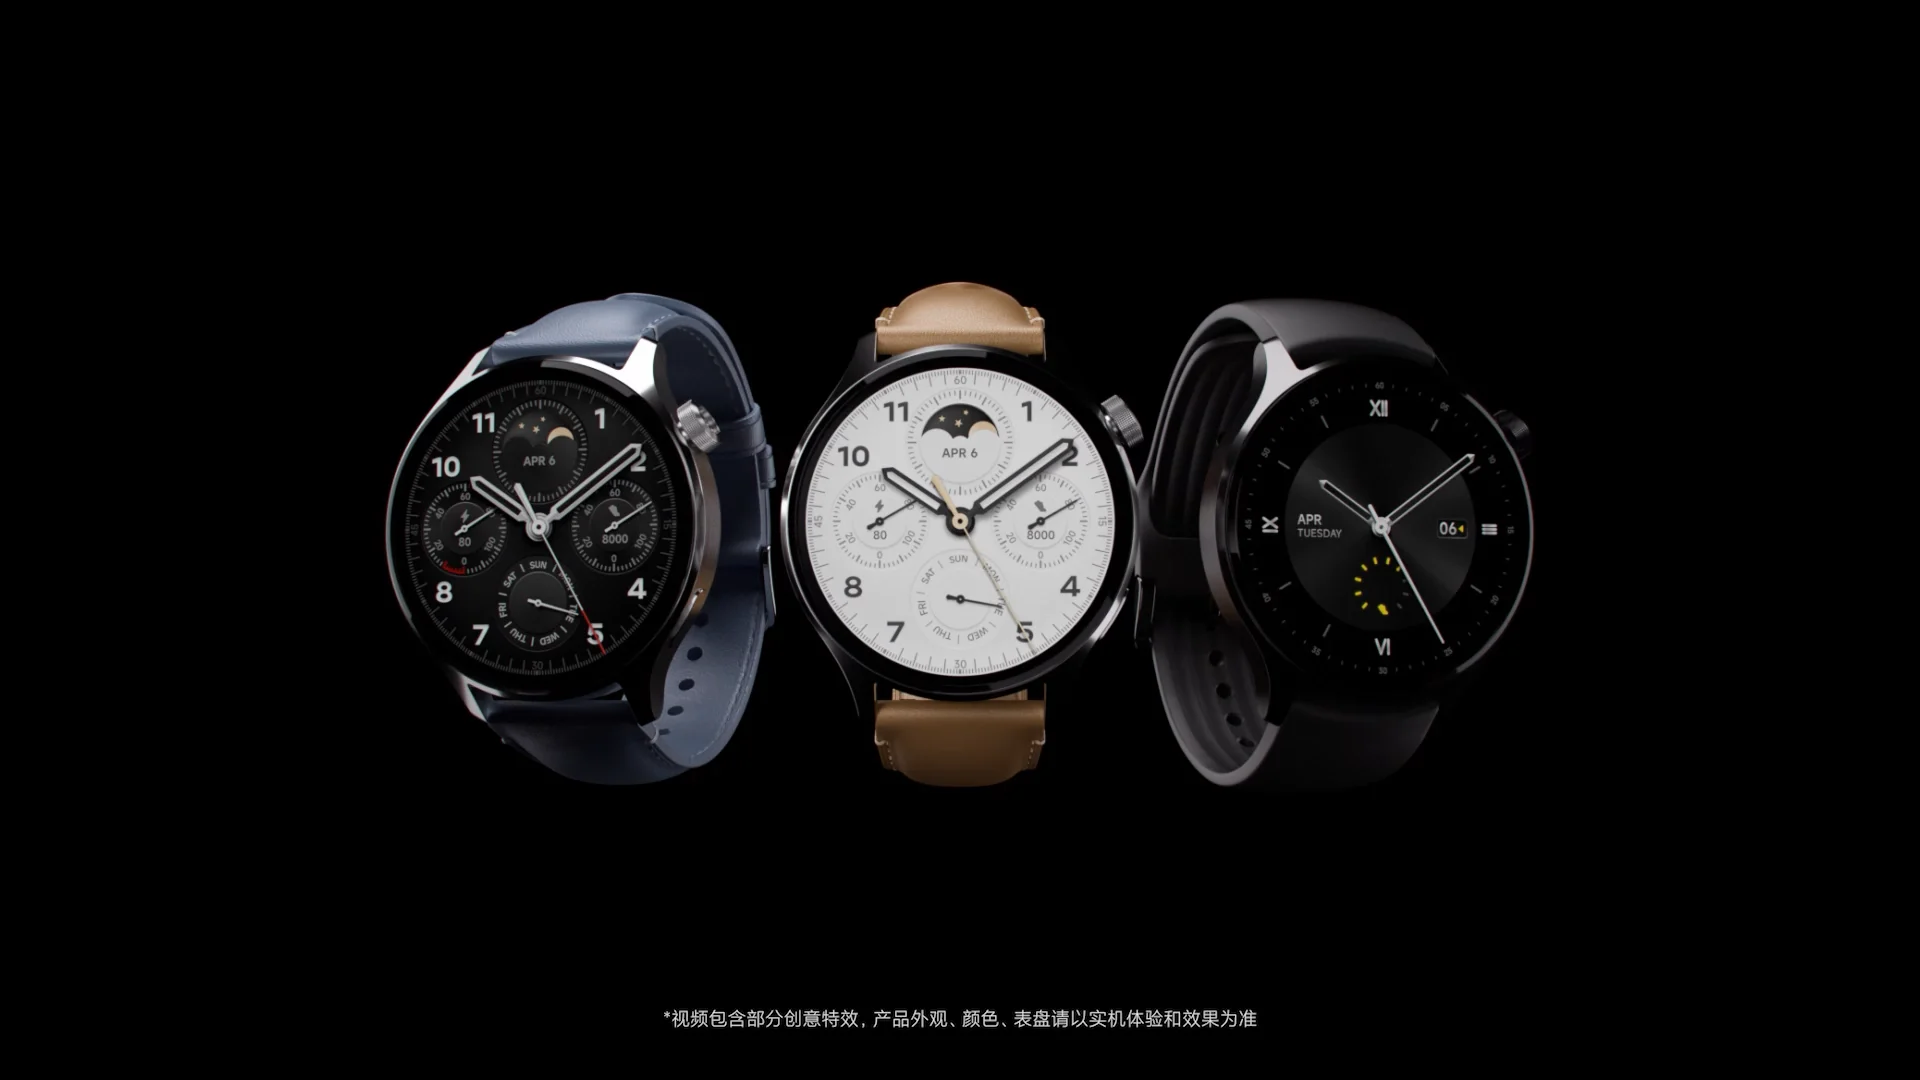 Xiaomi watch s1 Pro. Xiaomi watch s1. Xiaomi watch 2 Pro. Xiaomi watch s1 Pro Global. Watch xiaomi сравнить